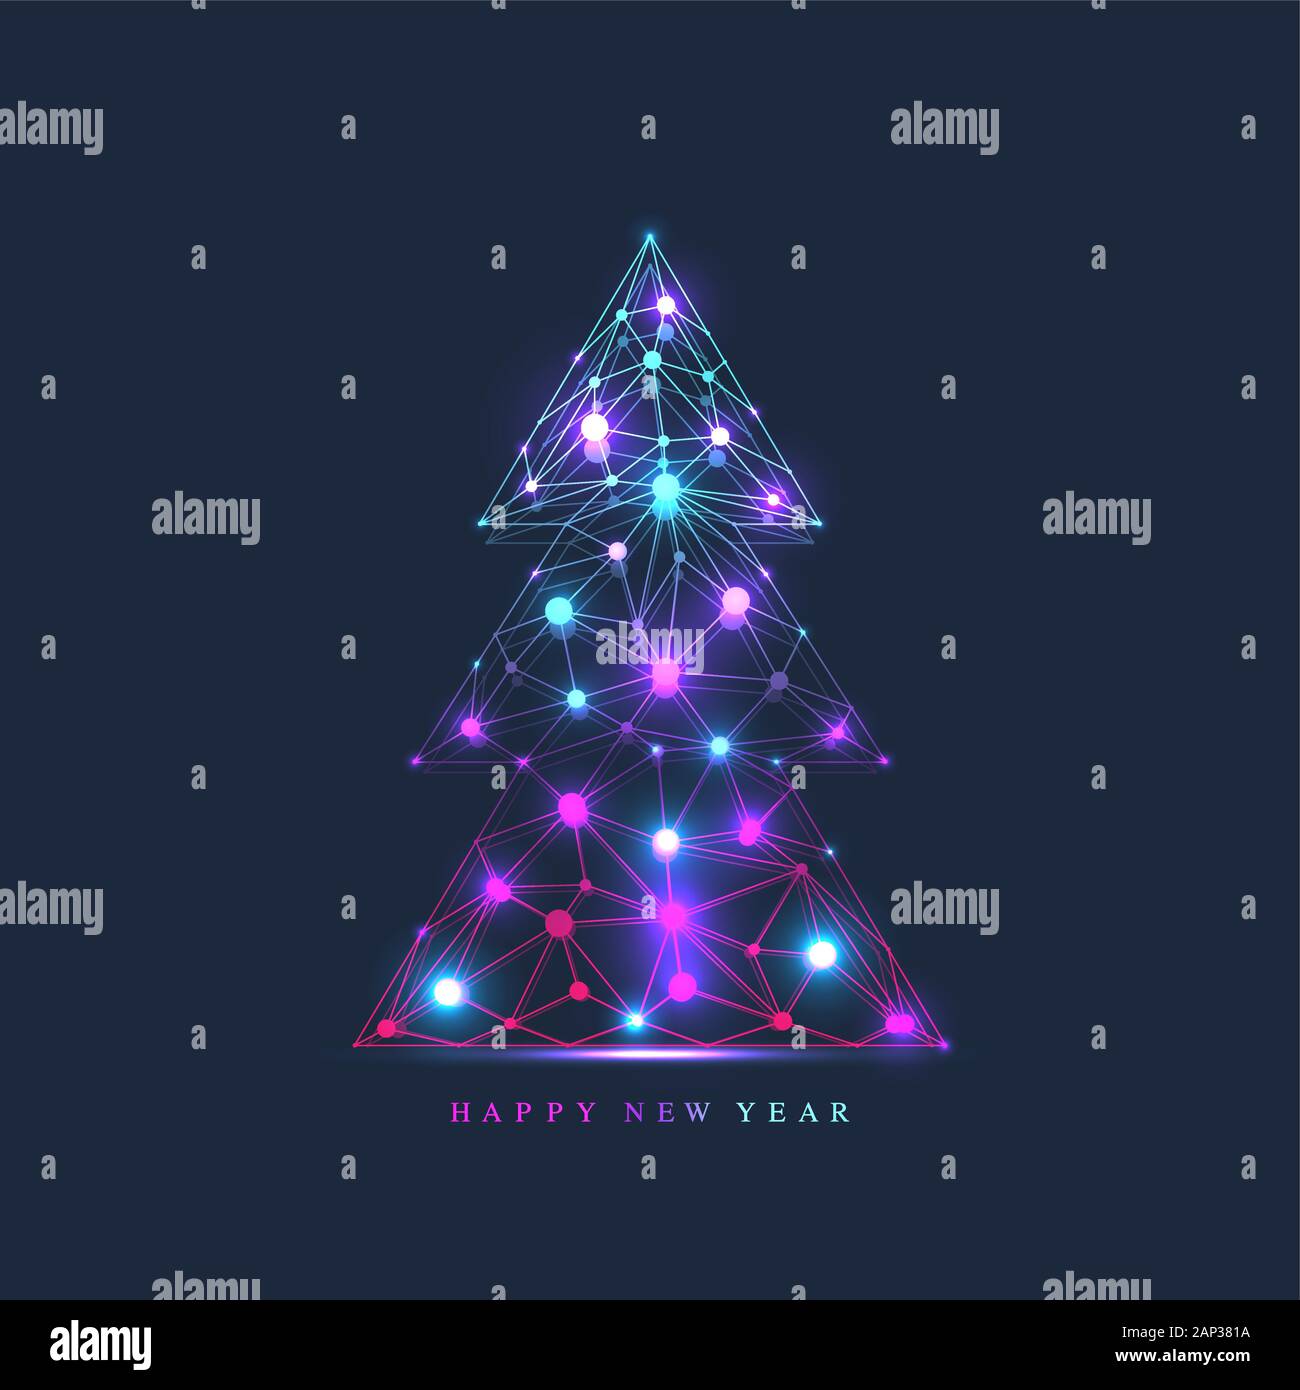 Noël et Nouvel An 2020 bannière avec black. L'élément de design avec des lignes et points de carte de vœux, carte postale, présentations Illustration de Vecteur